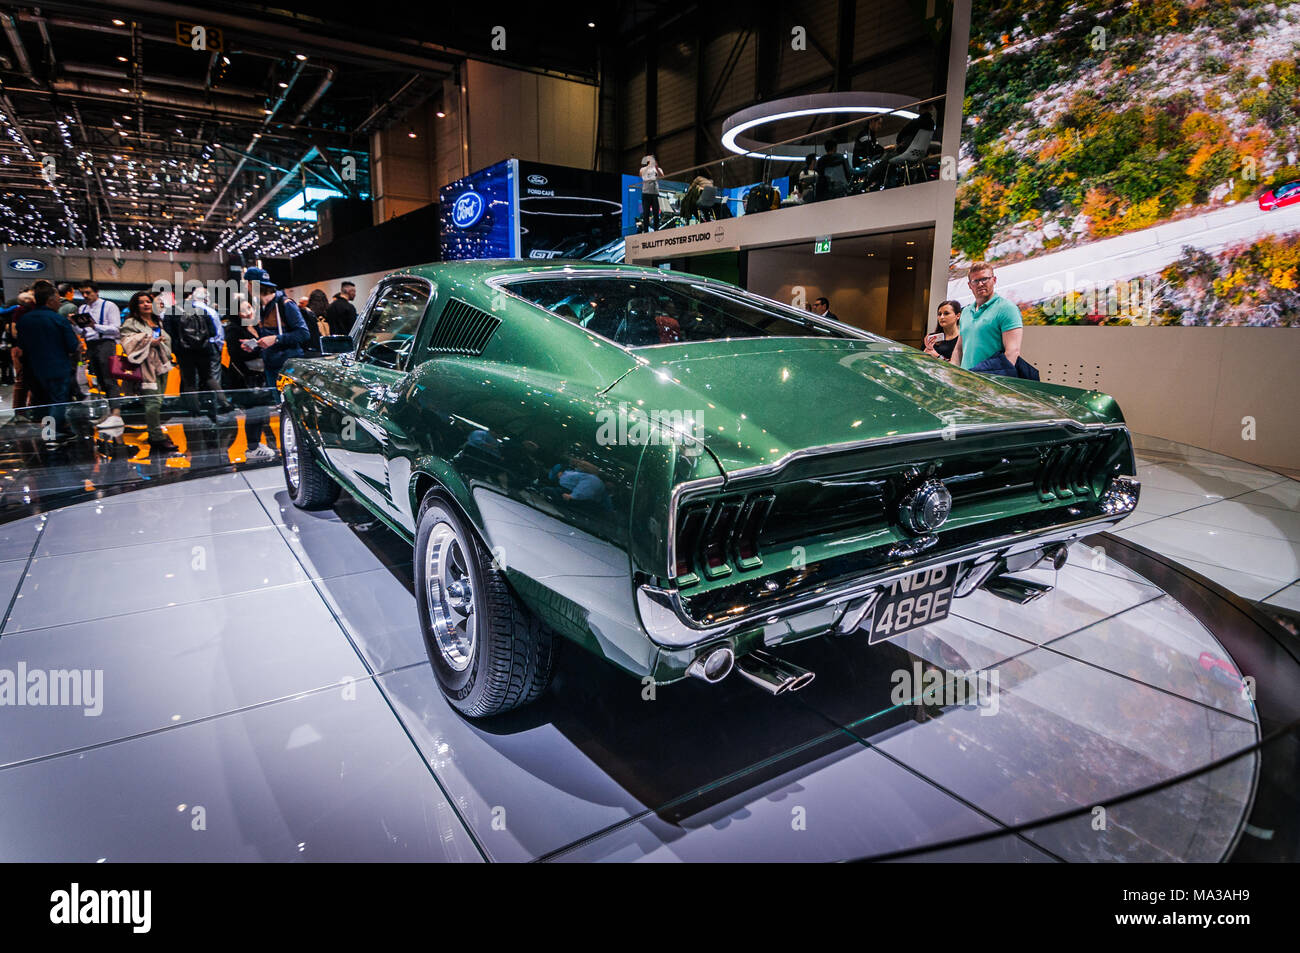 Genf, Schweiz - 17 März 2018: FORD MUSTANG BULLITT 1968 Superfast Sport  Auto auf dem 88. Internationalen Automobilsalon in Genf präsentiert  Stockfotografie - Alamy